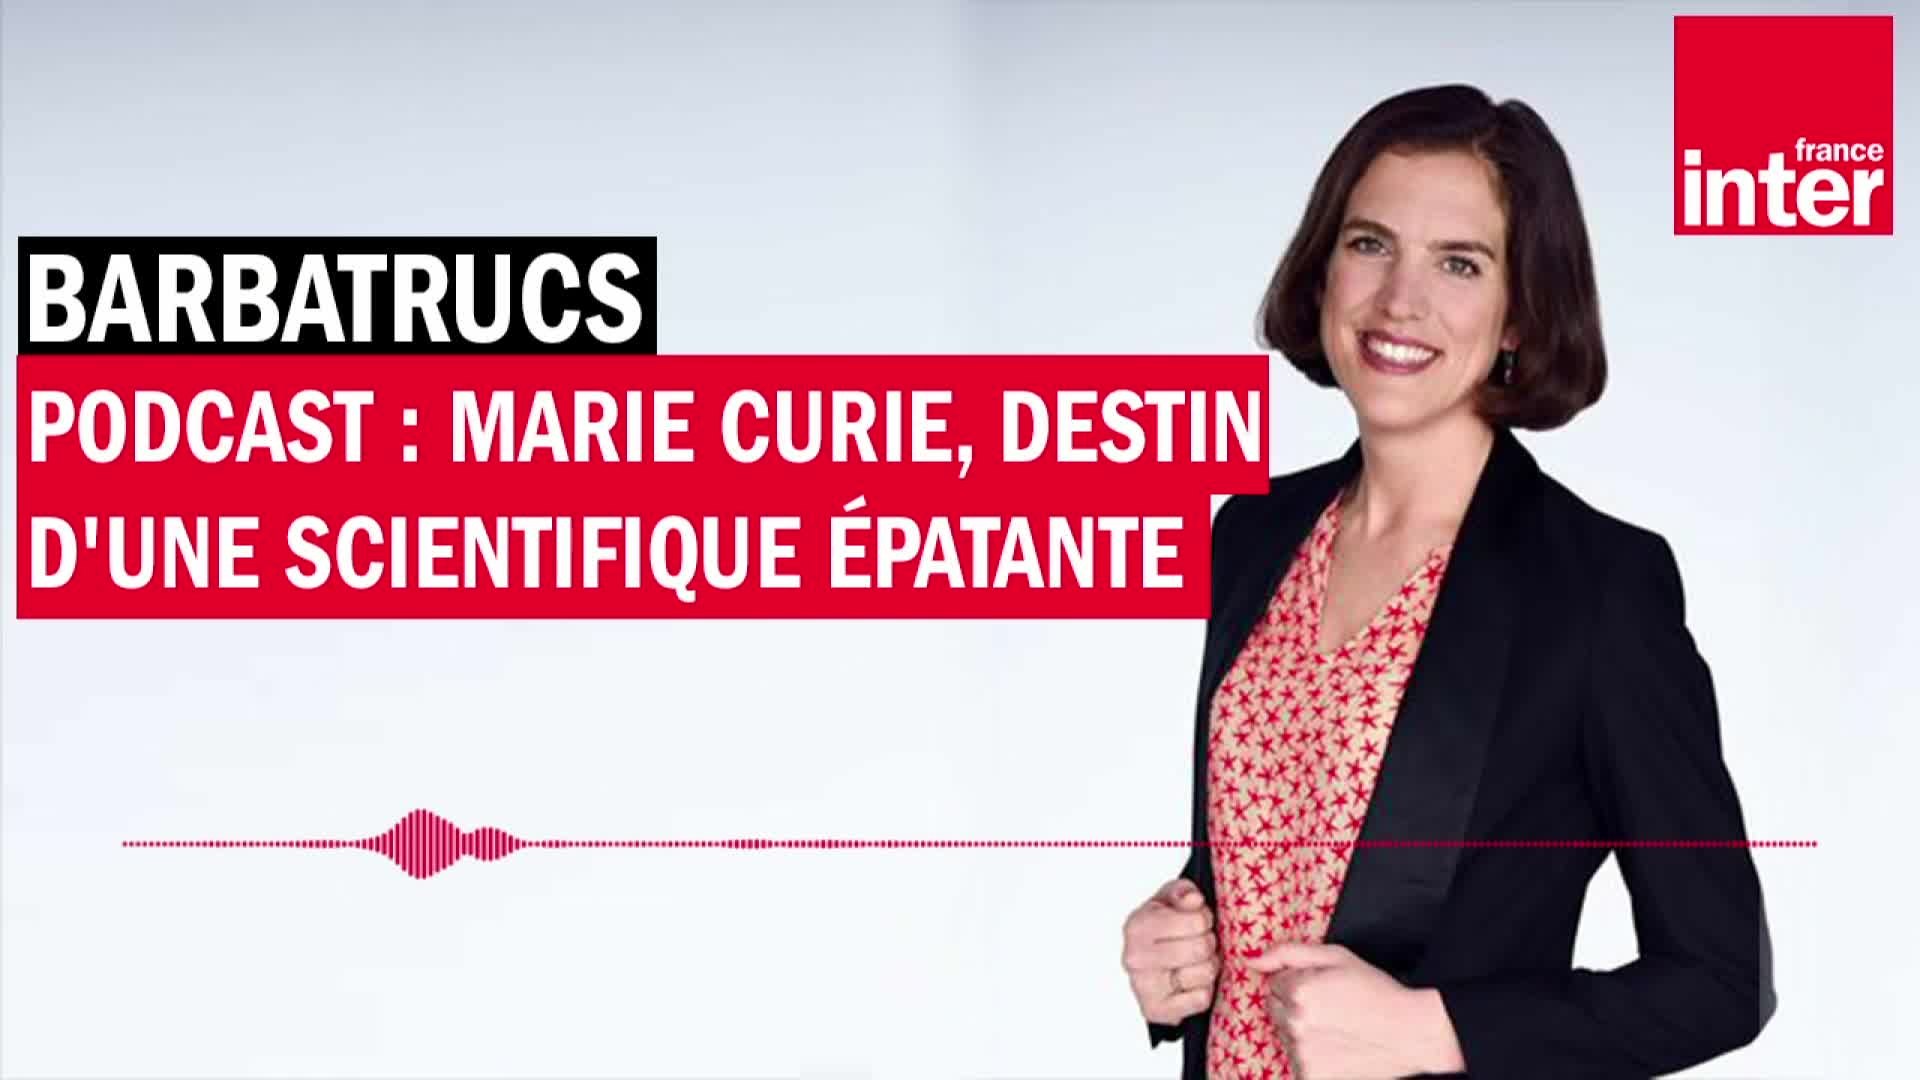 Podcast : Marie Curie, destin d'une scientifique épatante - Barbatrucs -  Vidéo Dailymotion